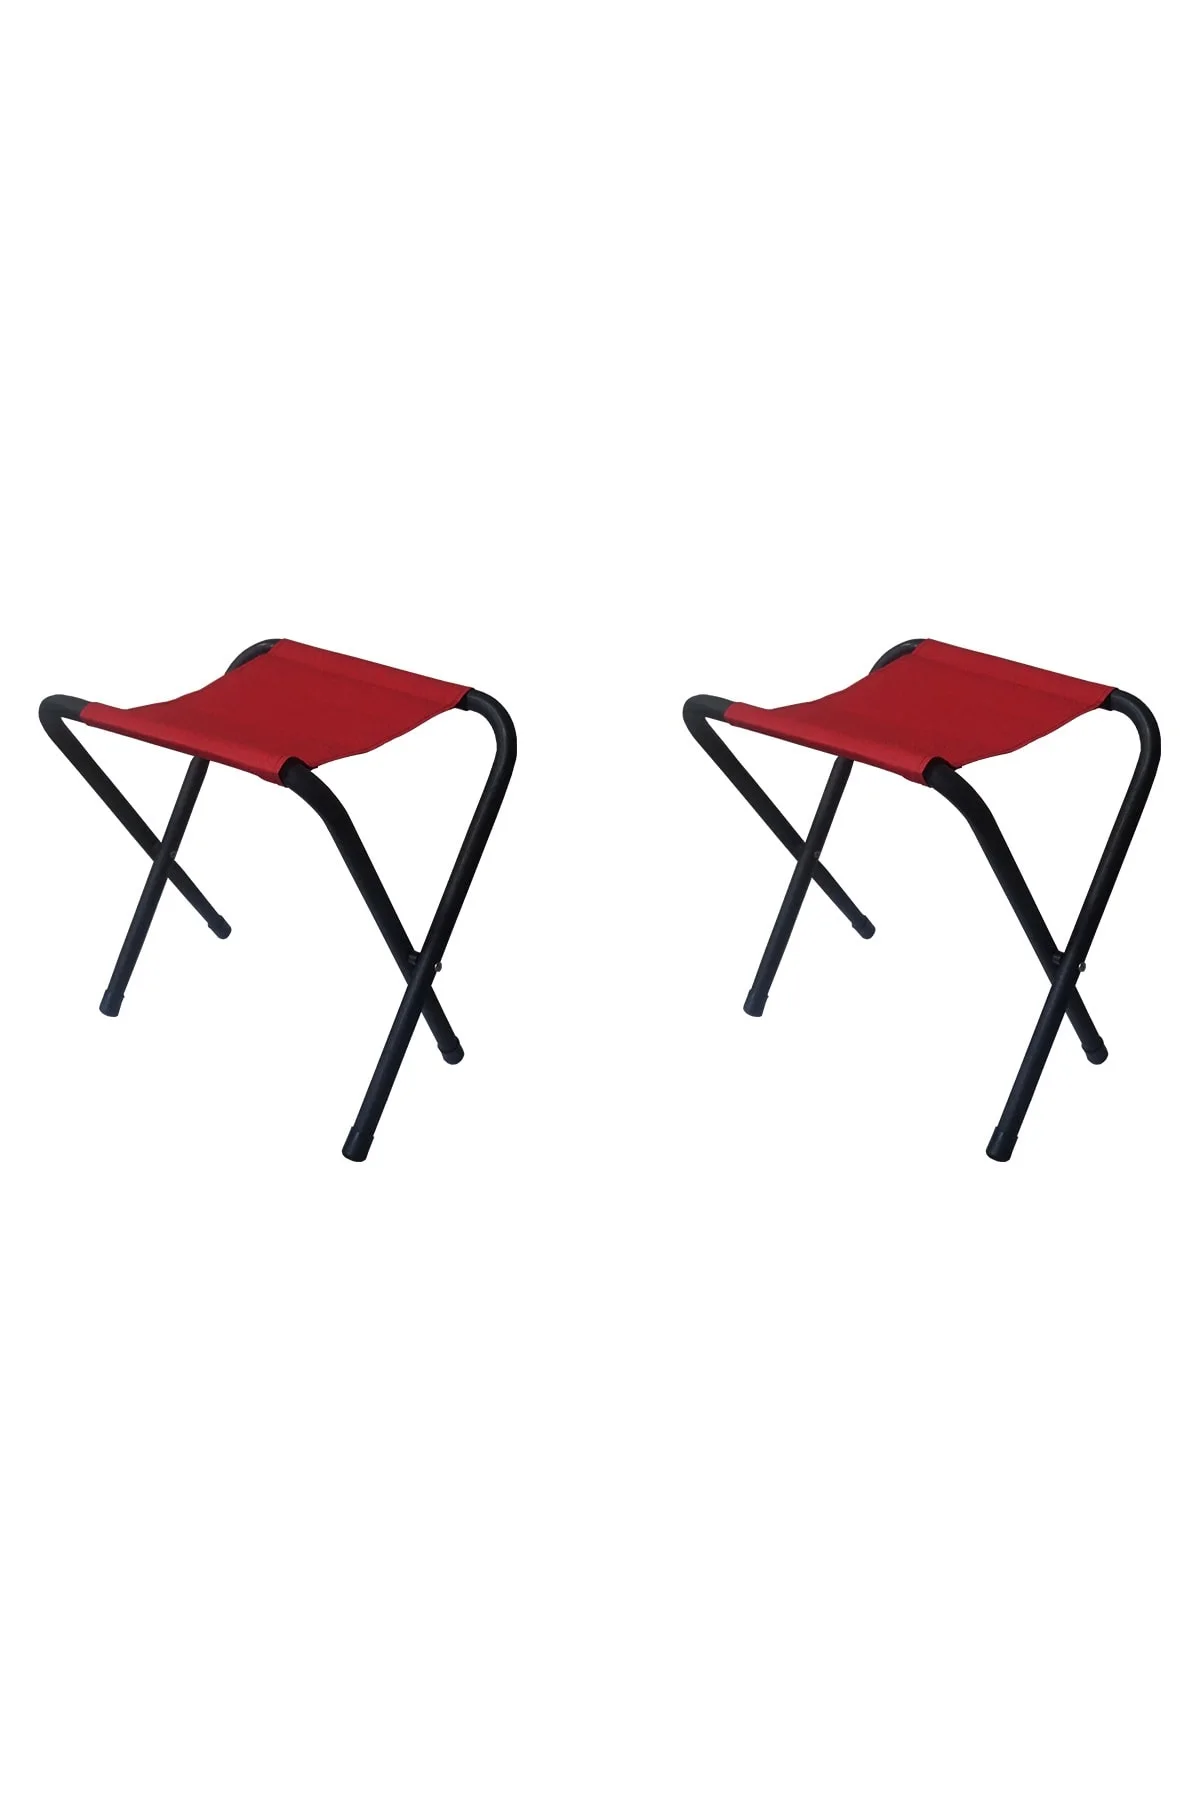 구매 접이식 캠핑 의자 경량 피크닉 낚시 의자 접이식 알루미늄 천 야외 휴대용 비치 의자, 야외 2 피스